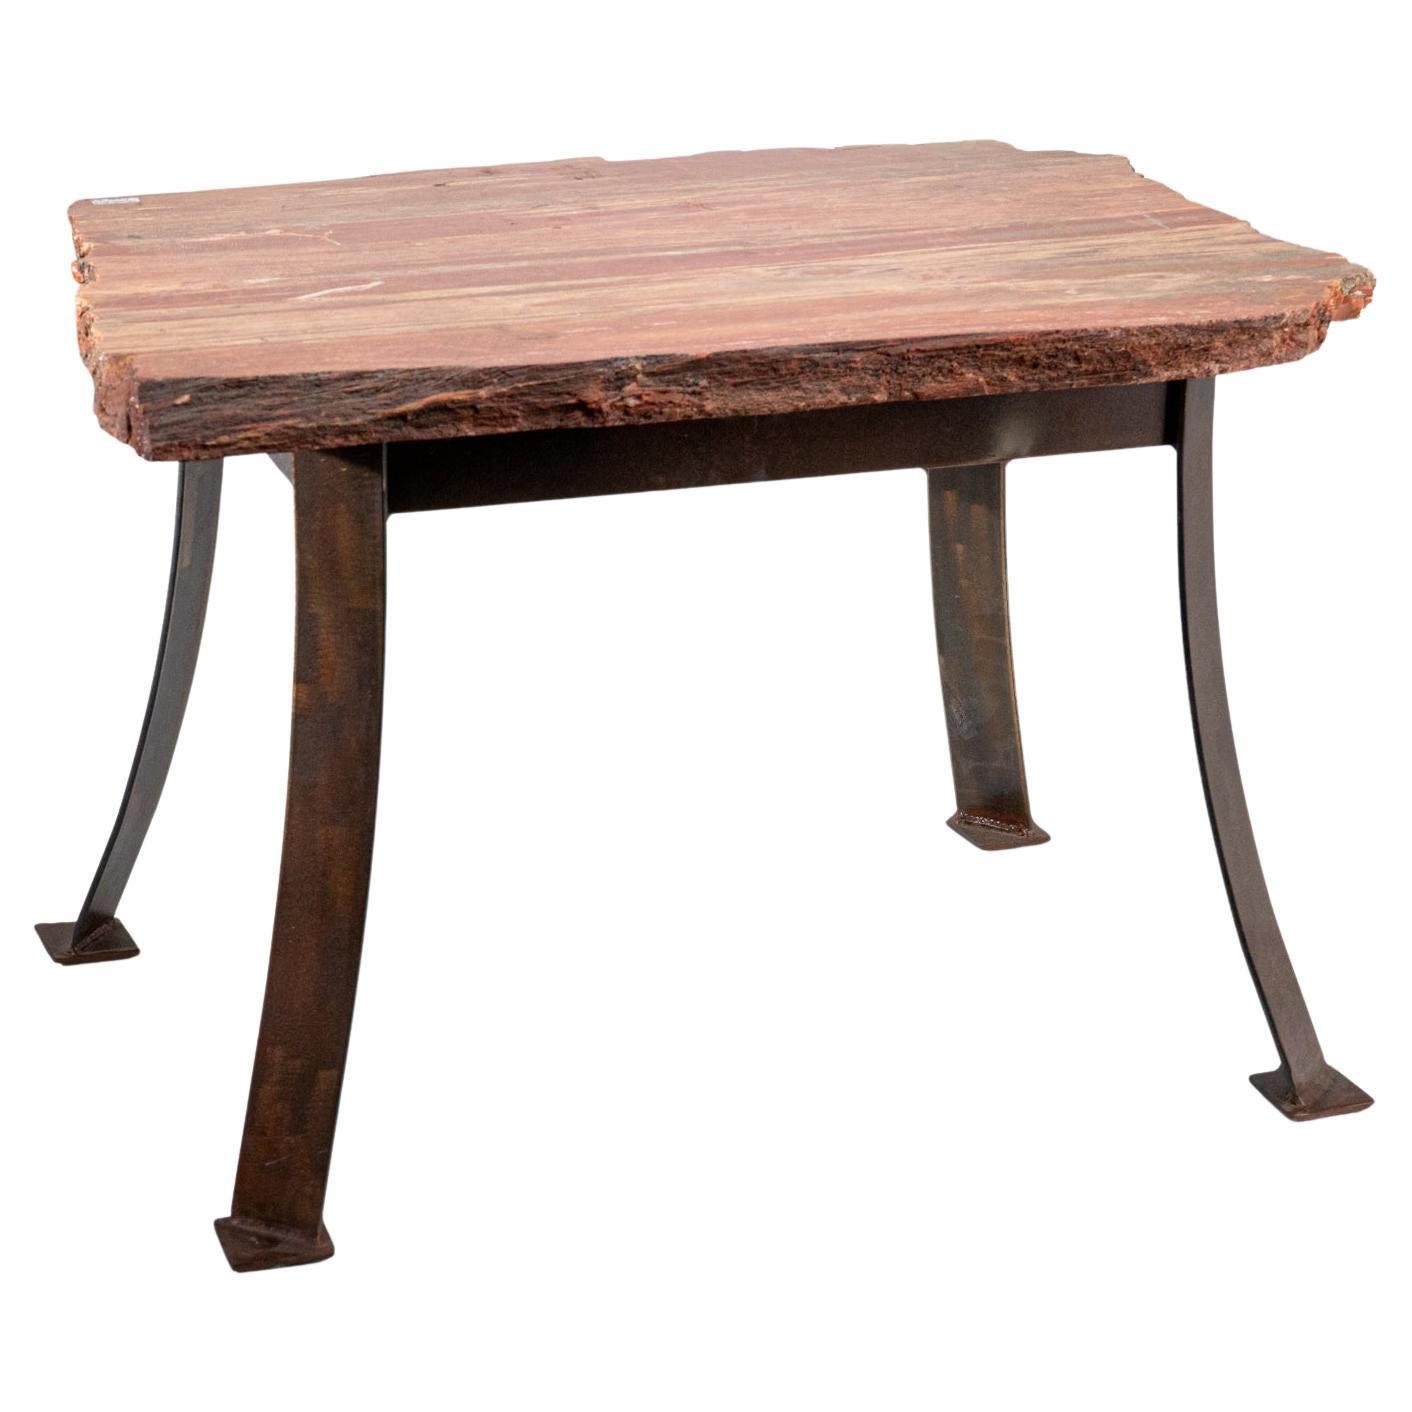 Cette magnifique table en bois pétrifié, polie à la main, provient de Madagascar. Elle est composée d'un morceau de bois pétrifié authentique d'une épaisseur de 1 pouce et mesure 17 pouces de haut. Il présente un motif étonnant avec des teintes